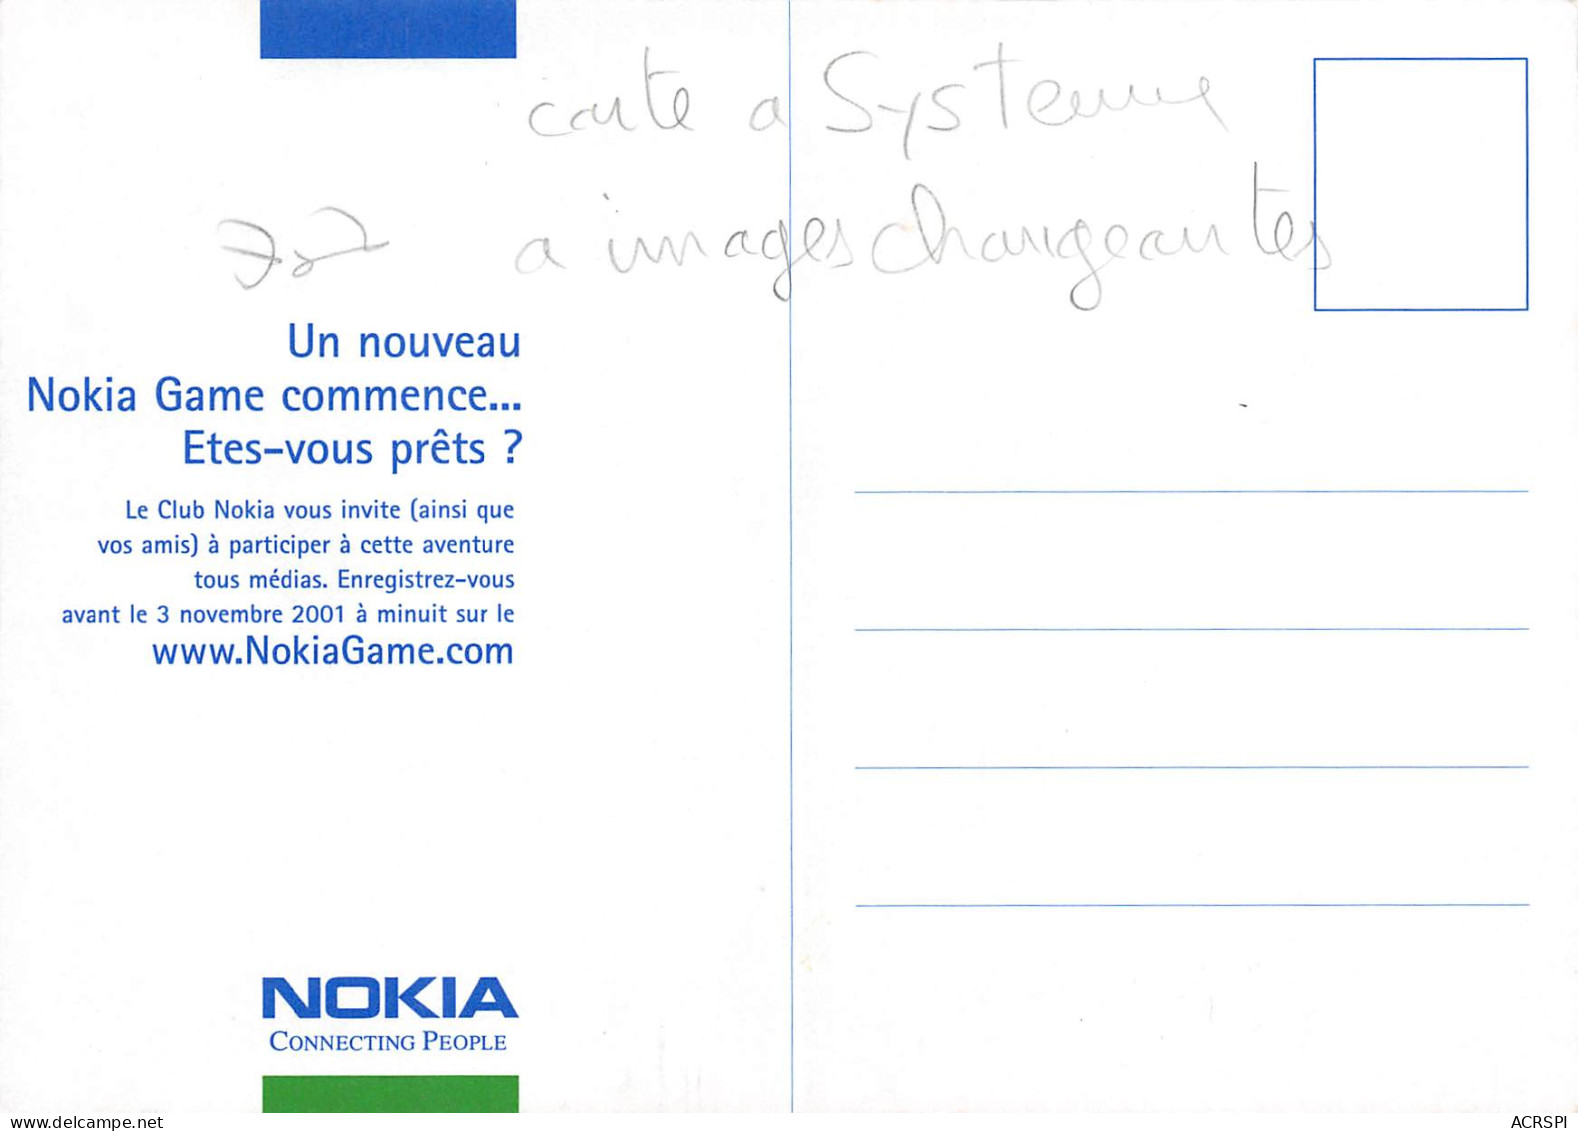 NOKIA Carte à Systeme à Image Changeante PUB Publicité N° 77 \MK3026 - Werbepostkarten